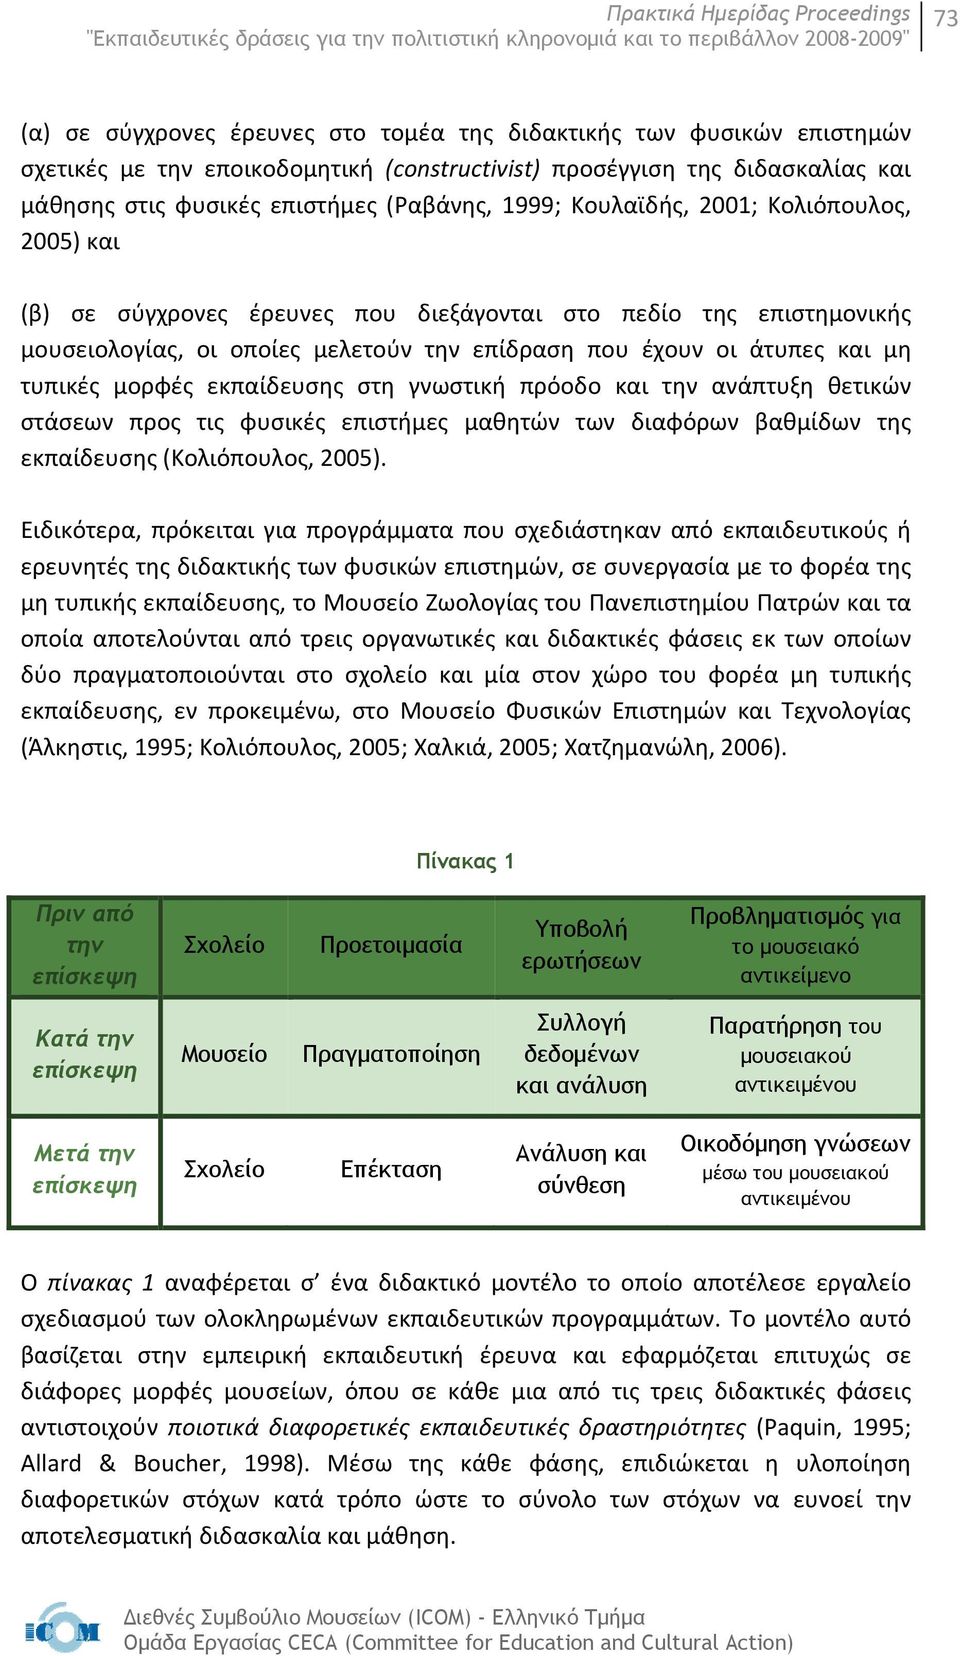 μορφές εκπαίδευσης στη γνωστική πρόοδο και την ανάπτυξη θετικών στάσεων προς τις φυσικές επιστήμες μαθητών των διαφόρων βαθμίδων της εκπαίδευσης (Κολιόπουλος, 2005).